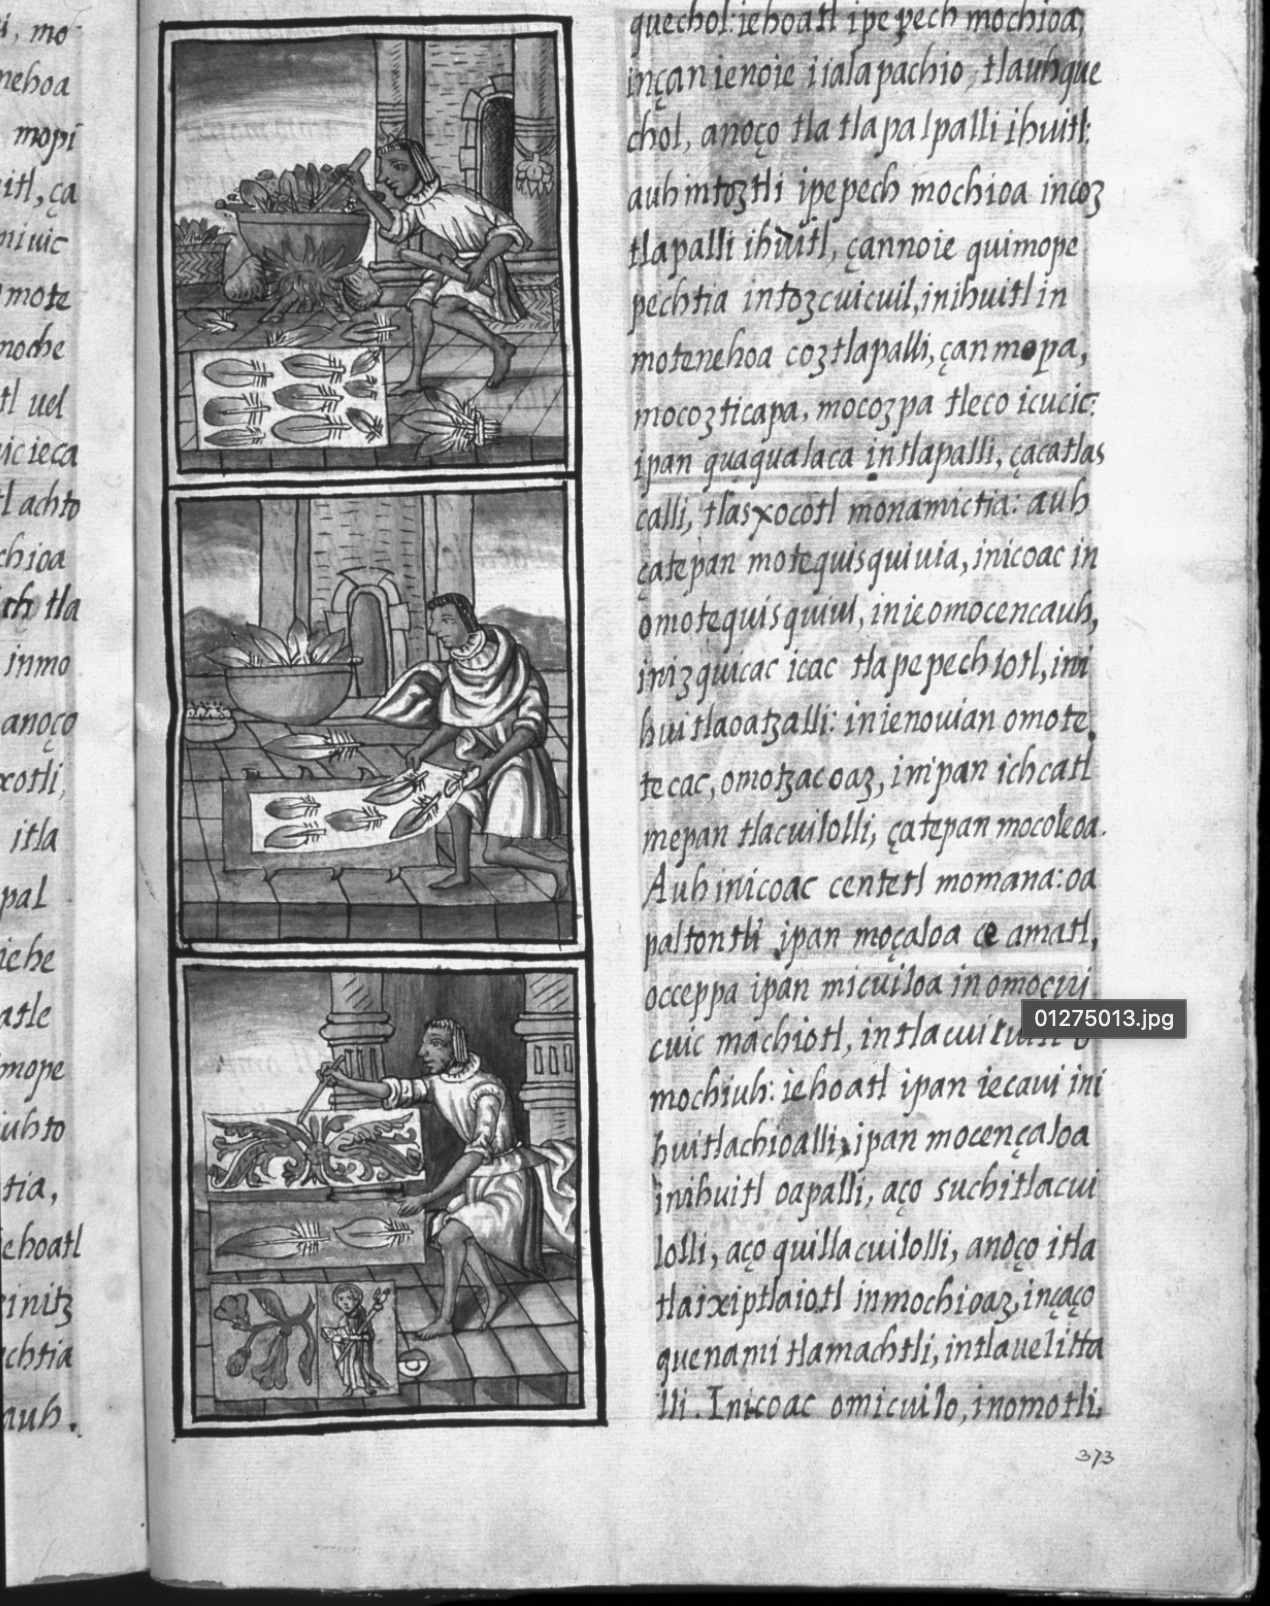 Amanteca in the Florentine Codex